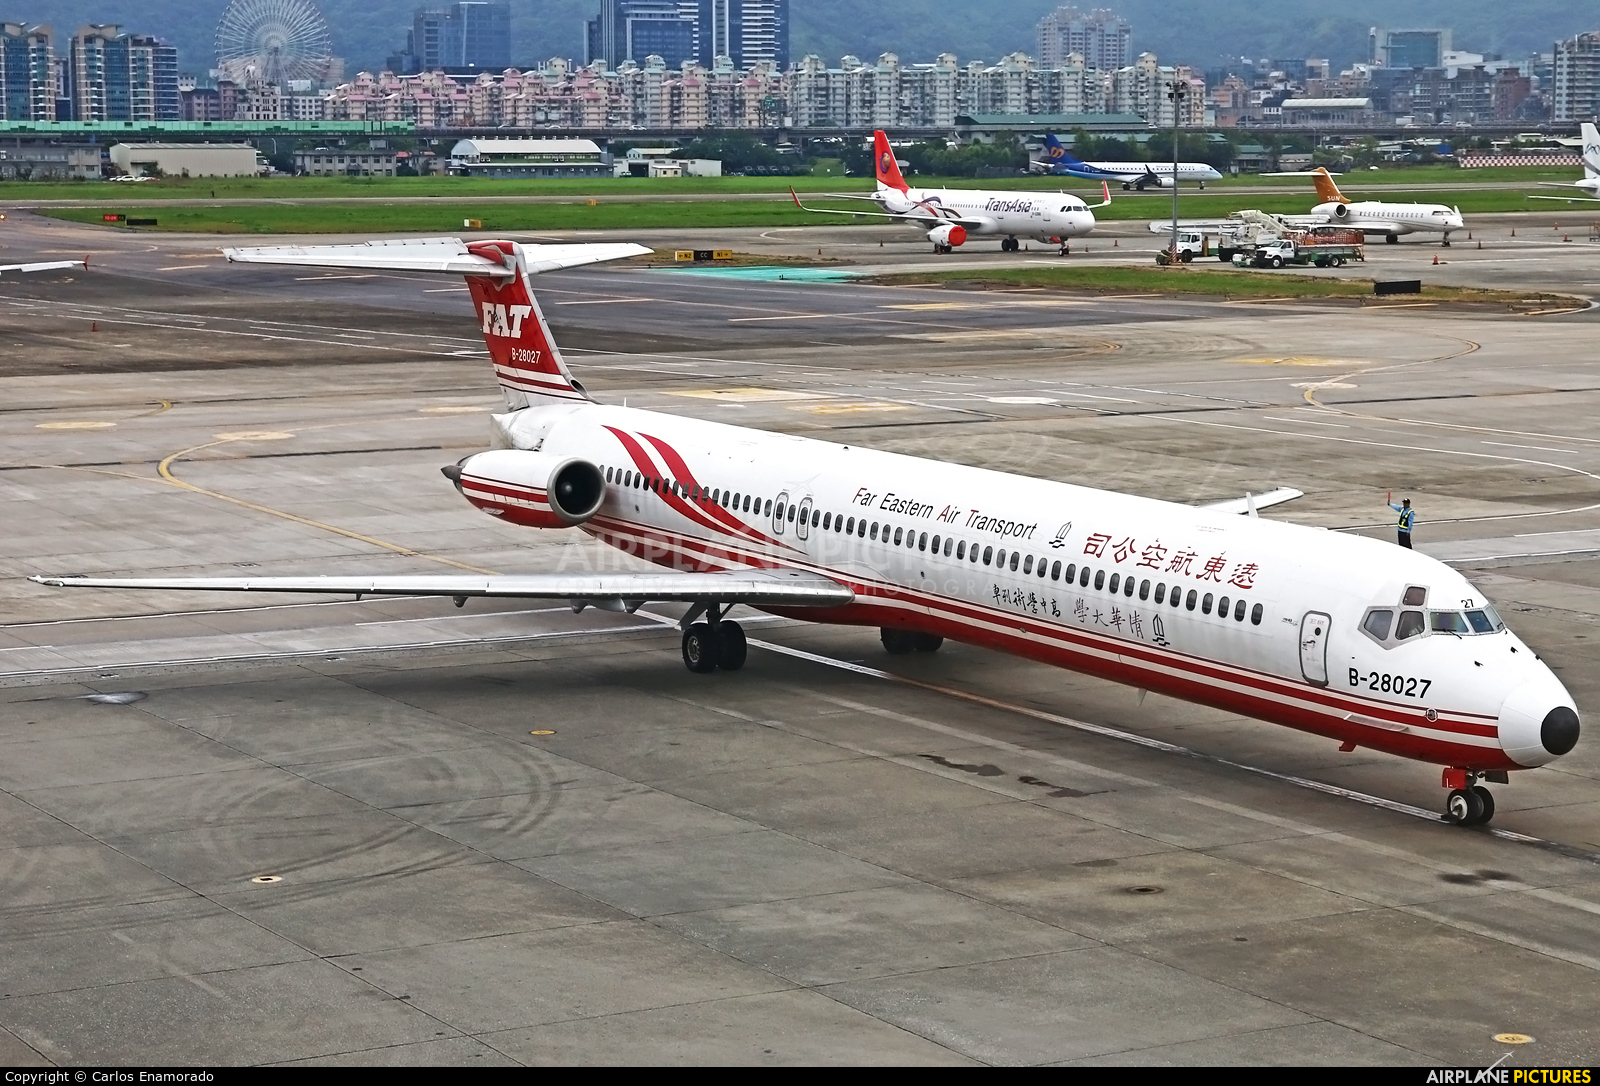 Far Eastern Air Transport B-28027 aircraft at Taipei Sung Shan/Songshan Airport